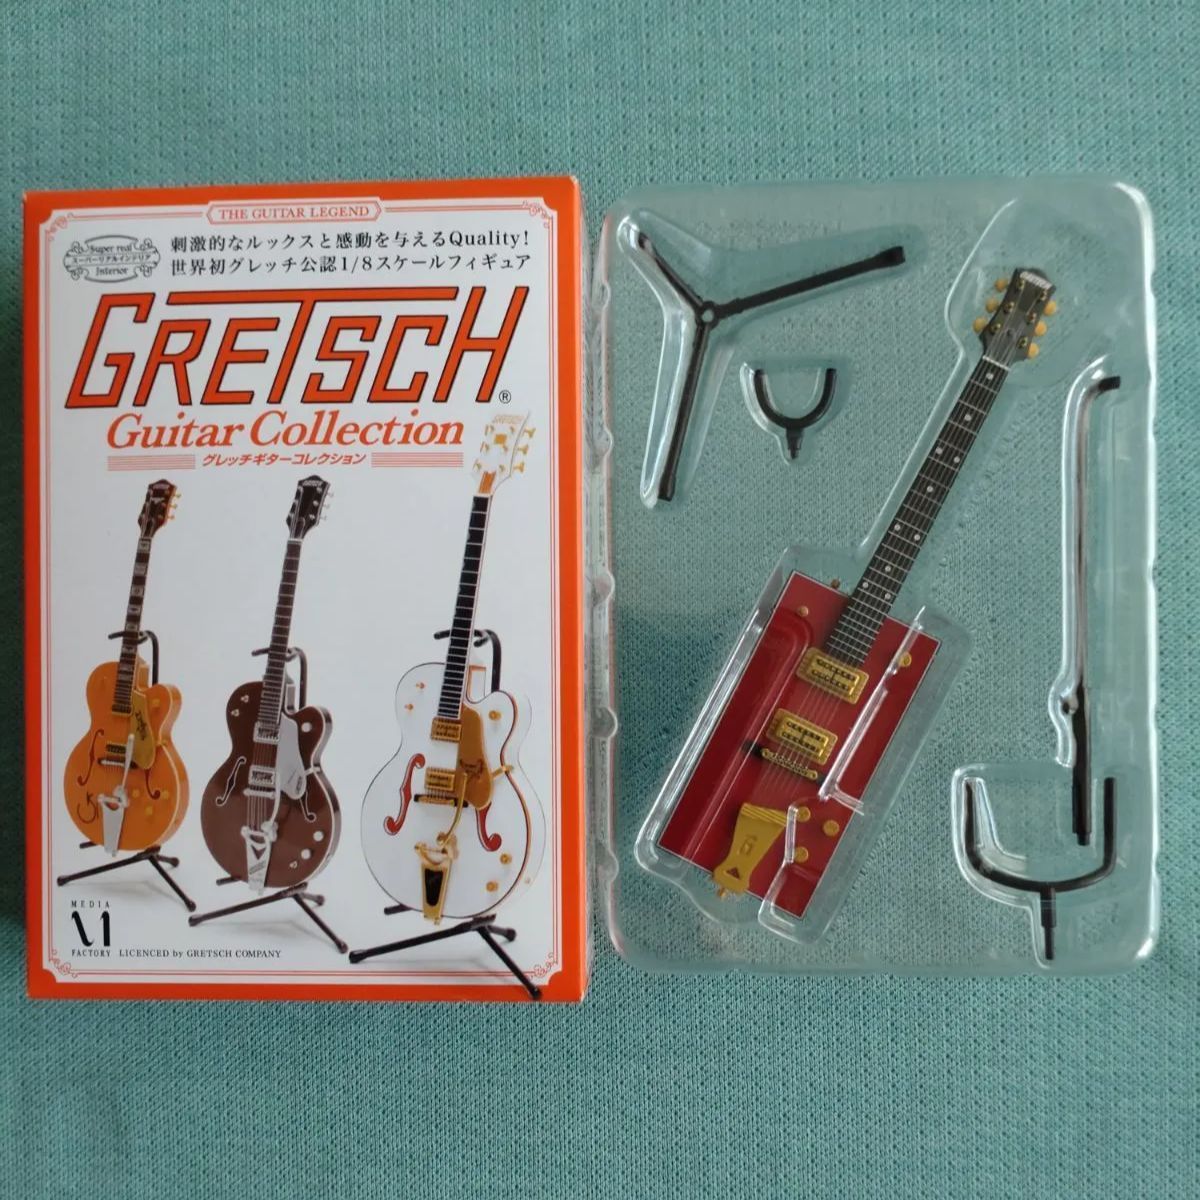 Guitar グレッチ GRETSCH ミニチュアフィギュア COLLECTION ギター 